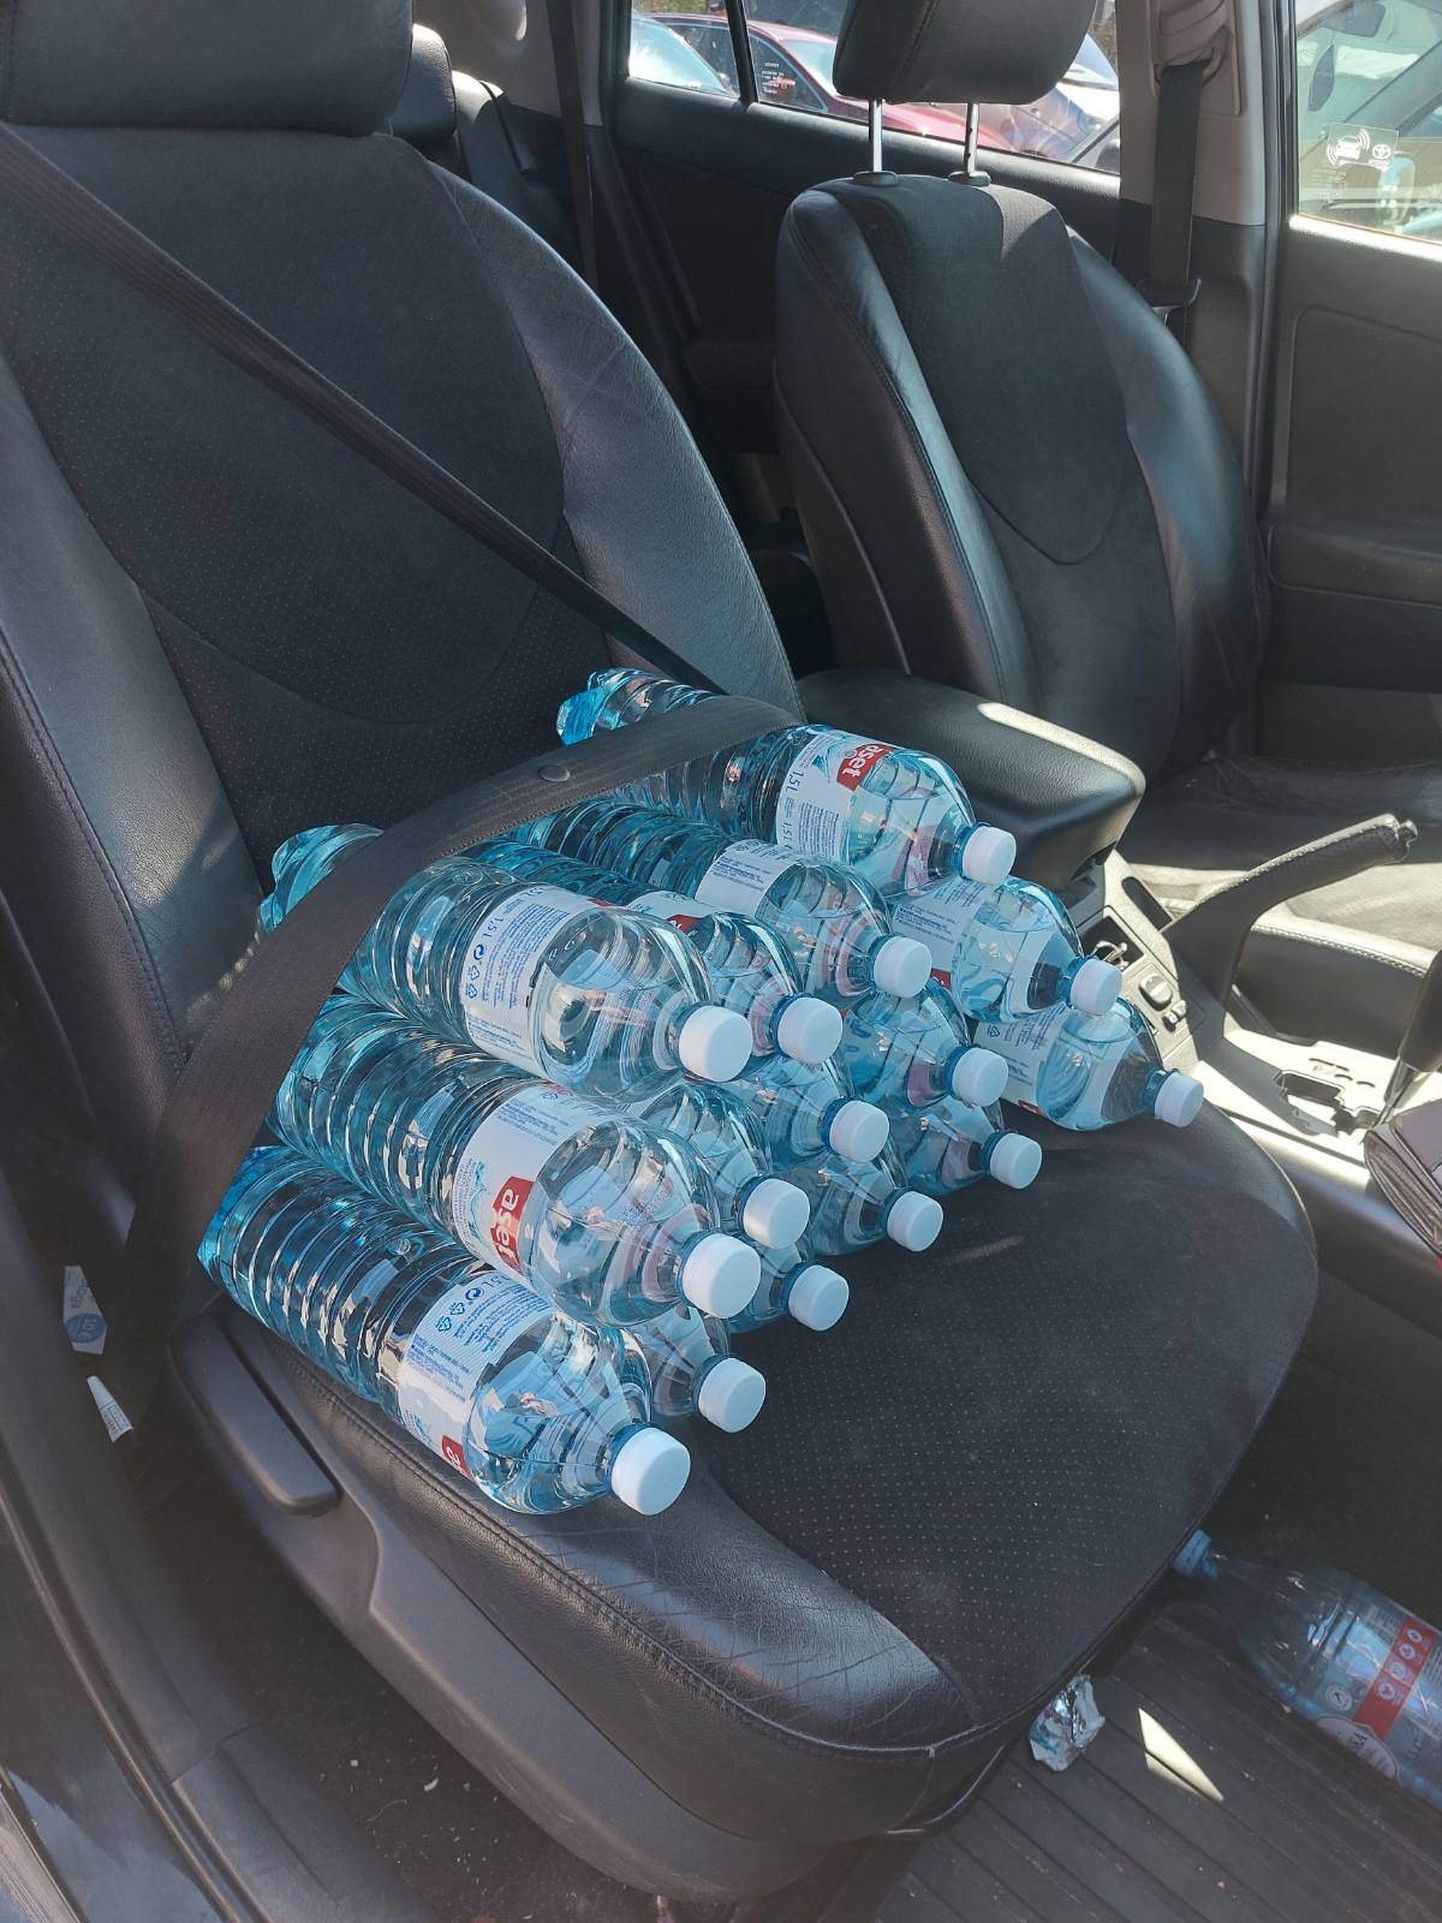 Pudelivesi kuumal ajal autos muutub väga kiiresti jooja tervisele ohtlikuks.